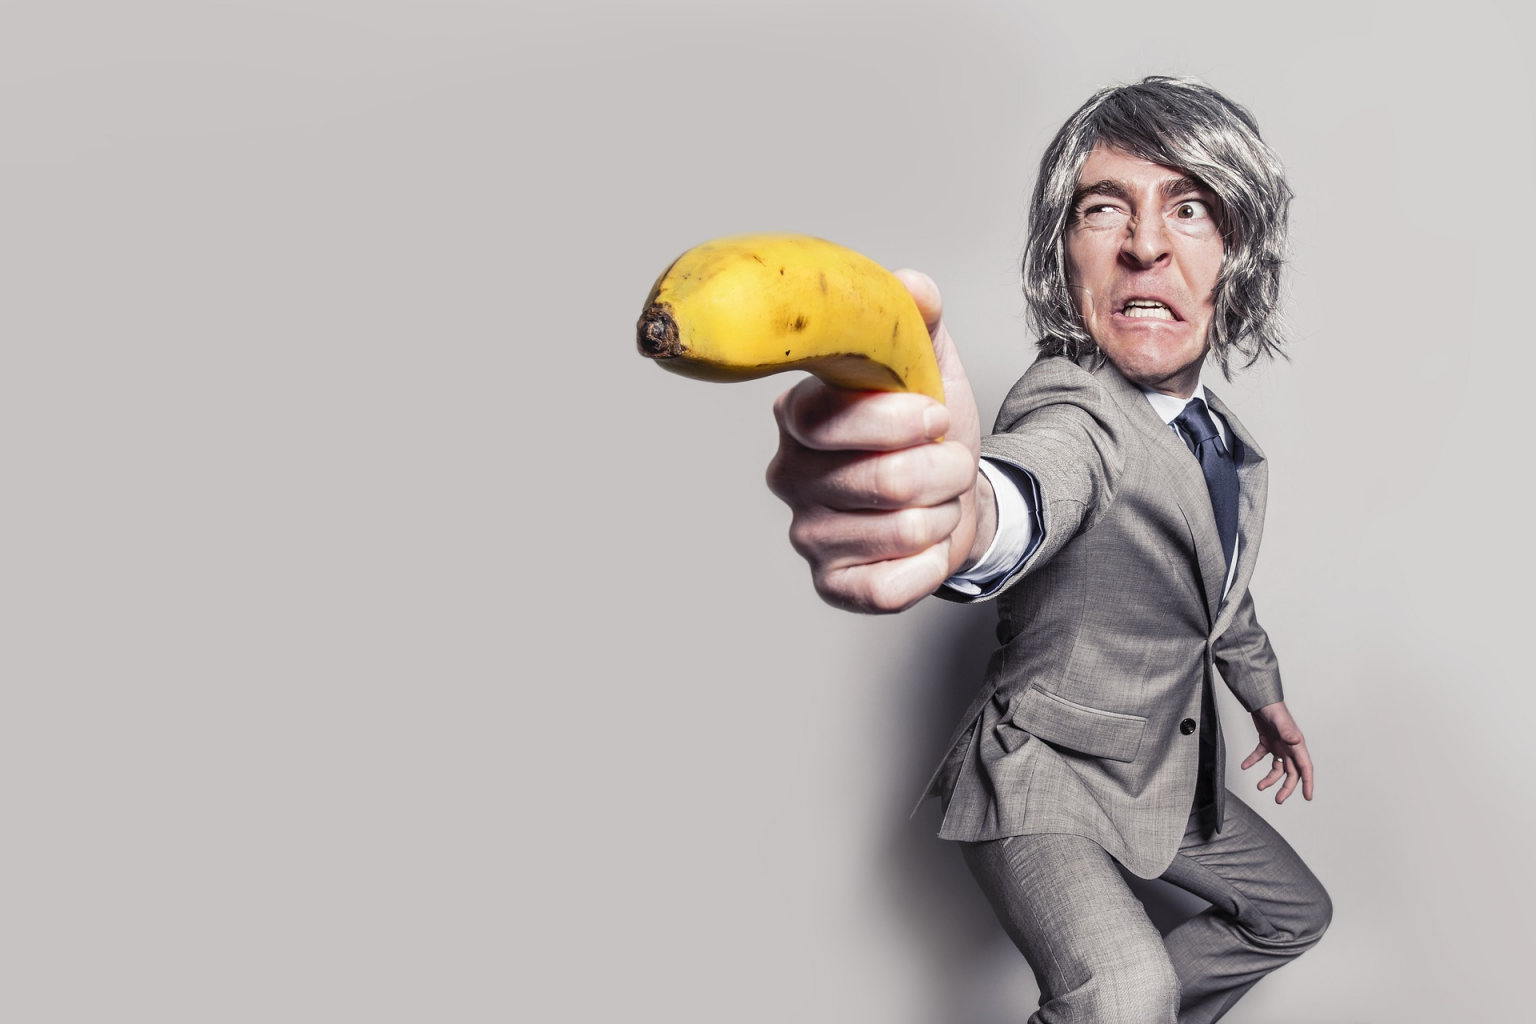 öltönyös férfi, aki egy banánt tart a kezében pisztolyként